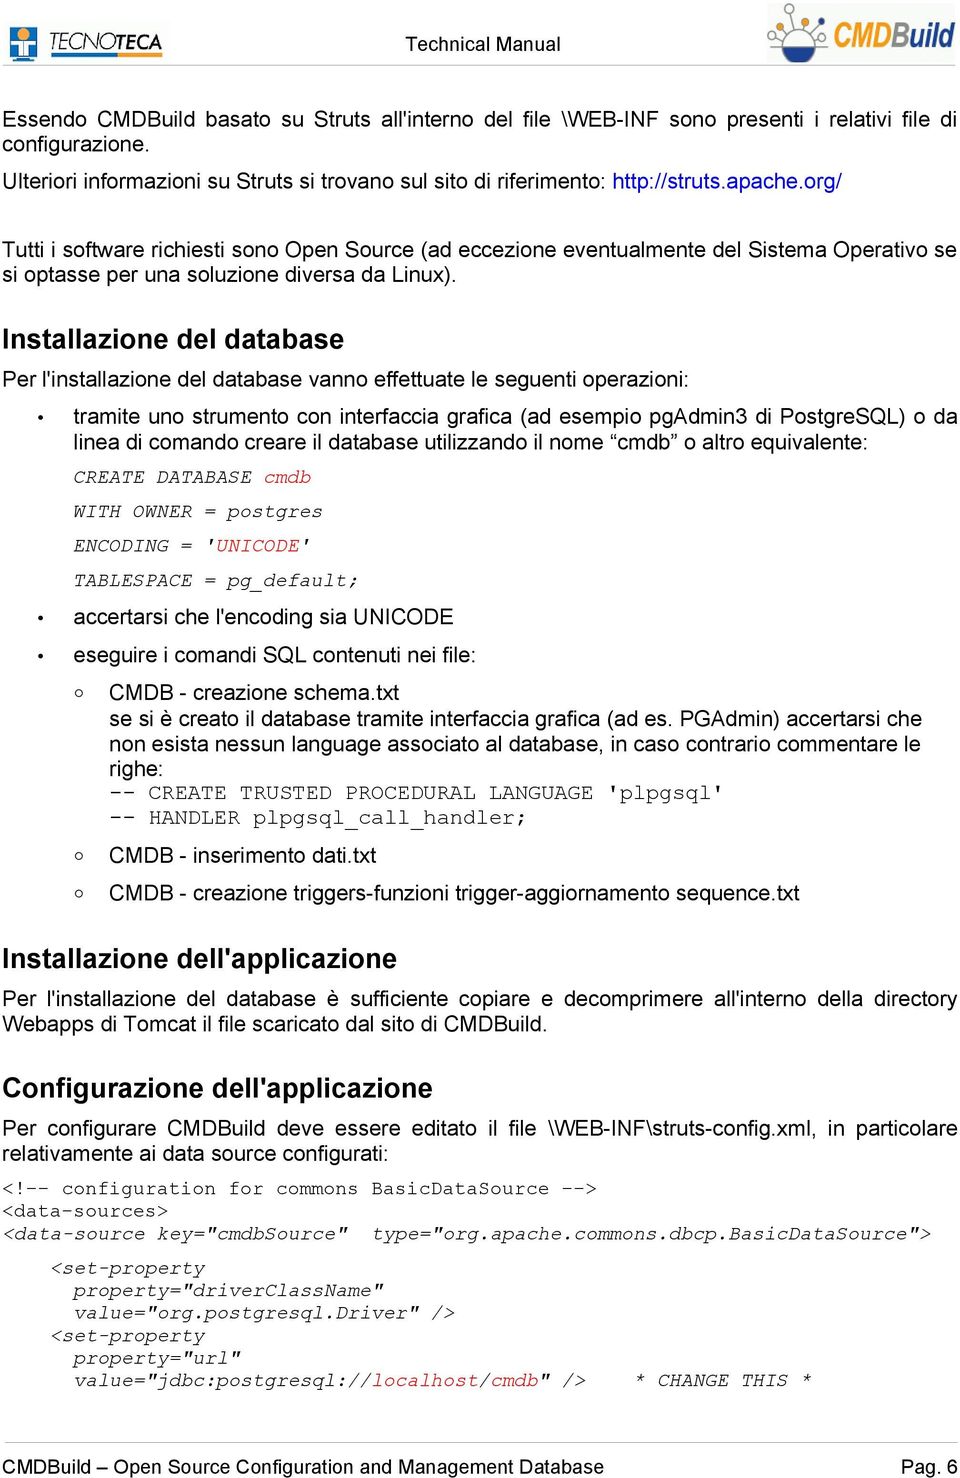 Installazione del database Per l'installazione del database vanno effettuate le seguenti operazioni: tramite uno strumento con interfaccia grafica (ad esempio pgadmin3 di PostgreSQL) o da linea di